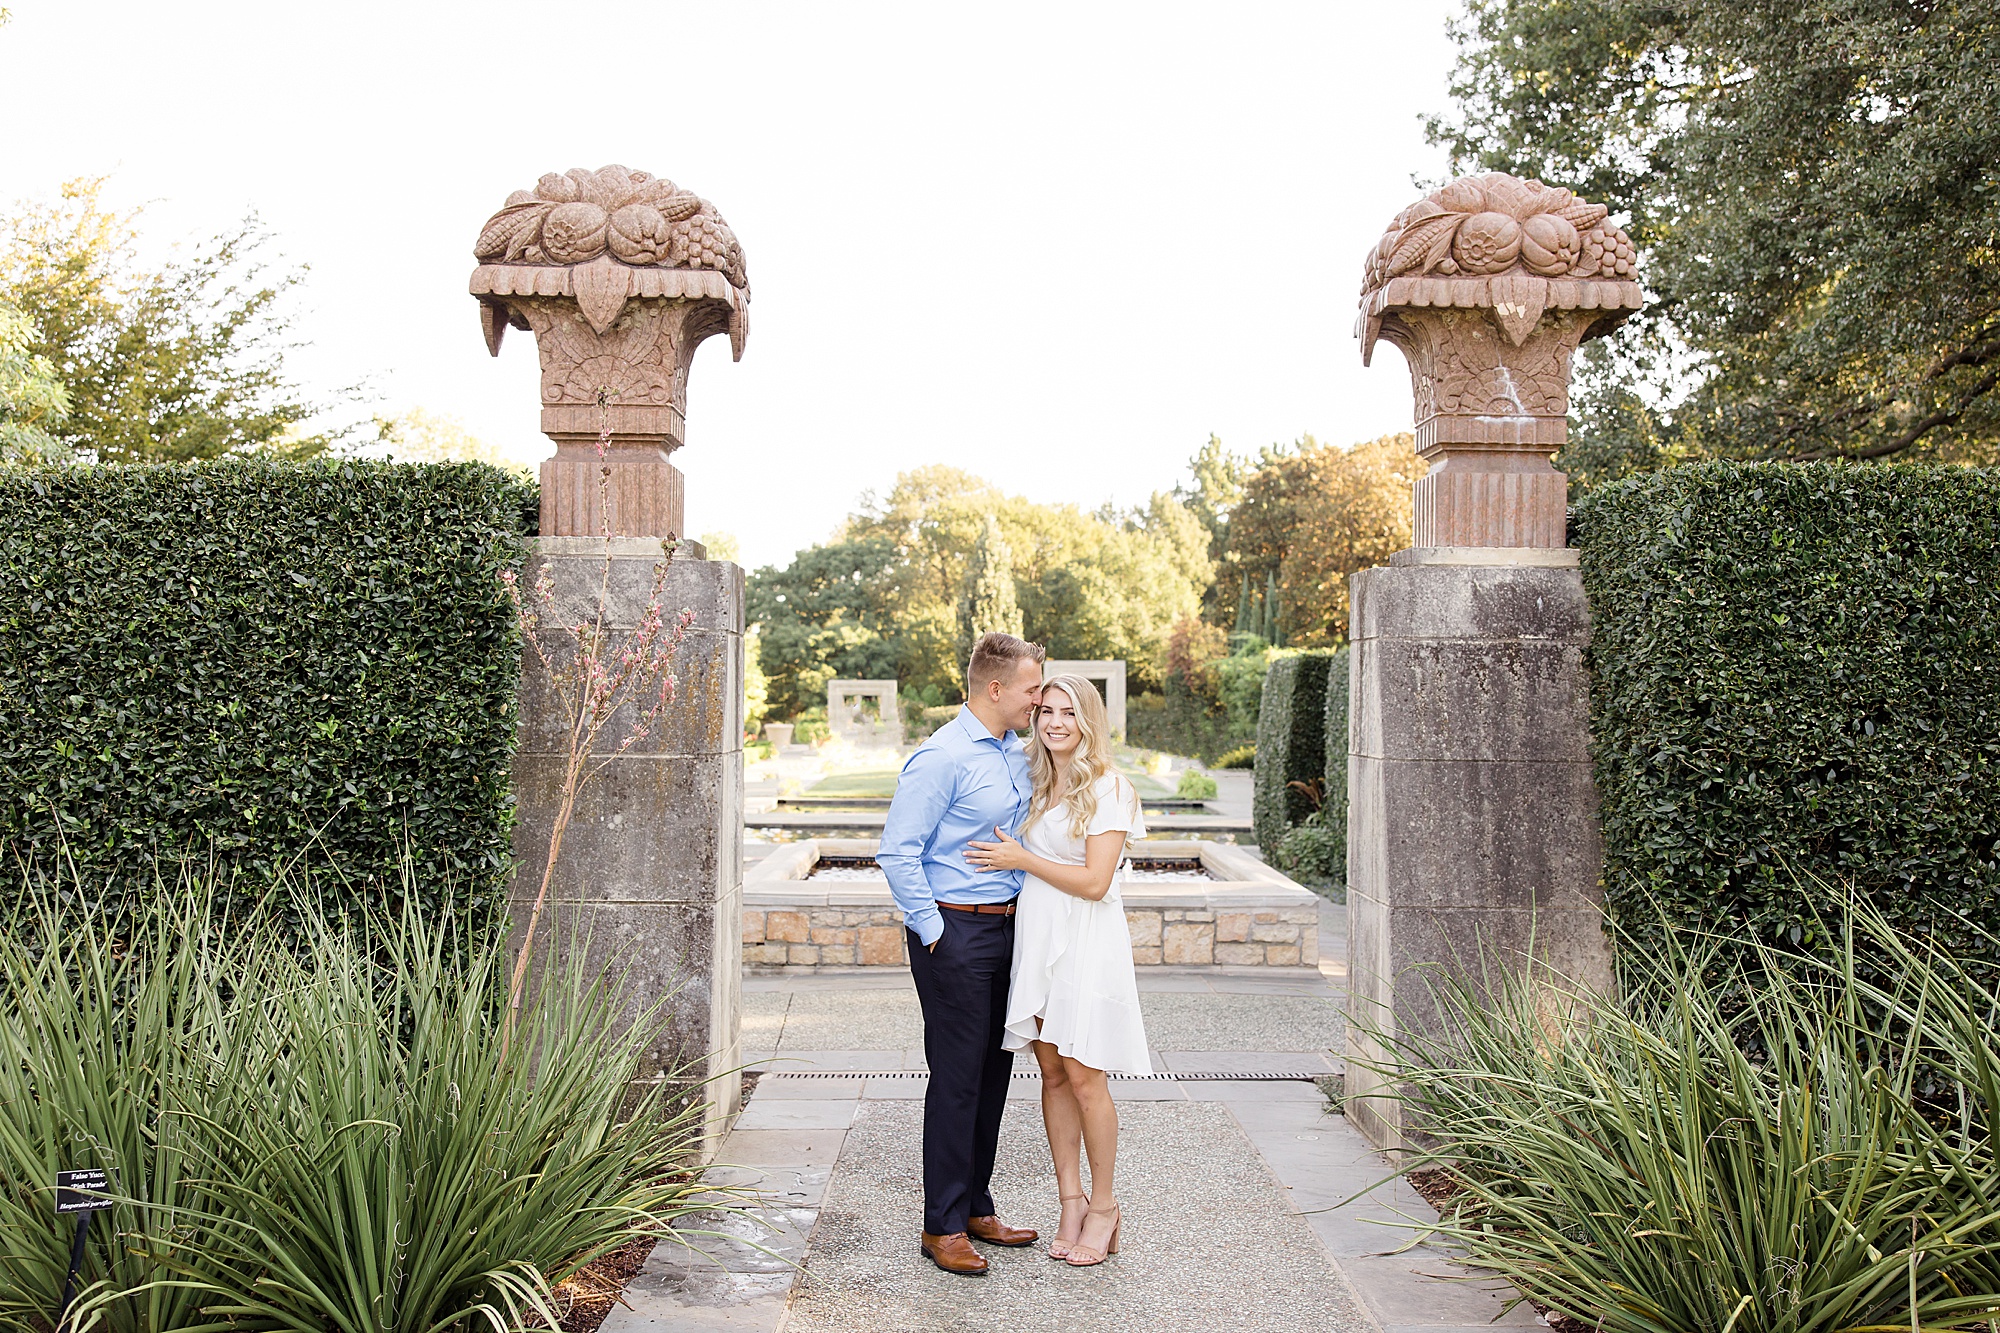 Dallas Arboretum engagement portraits for Texas couple